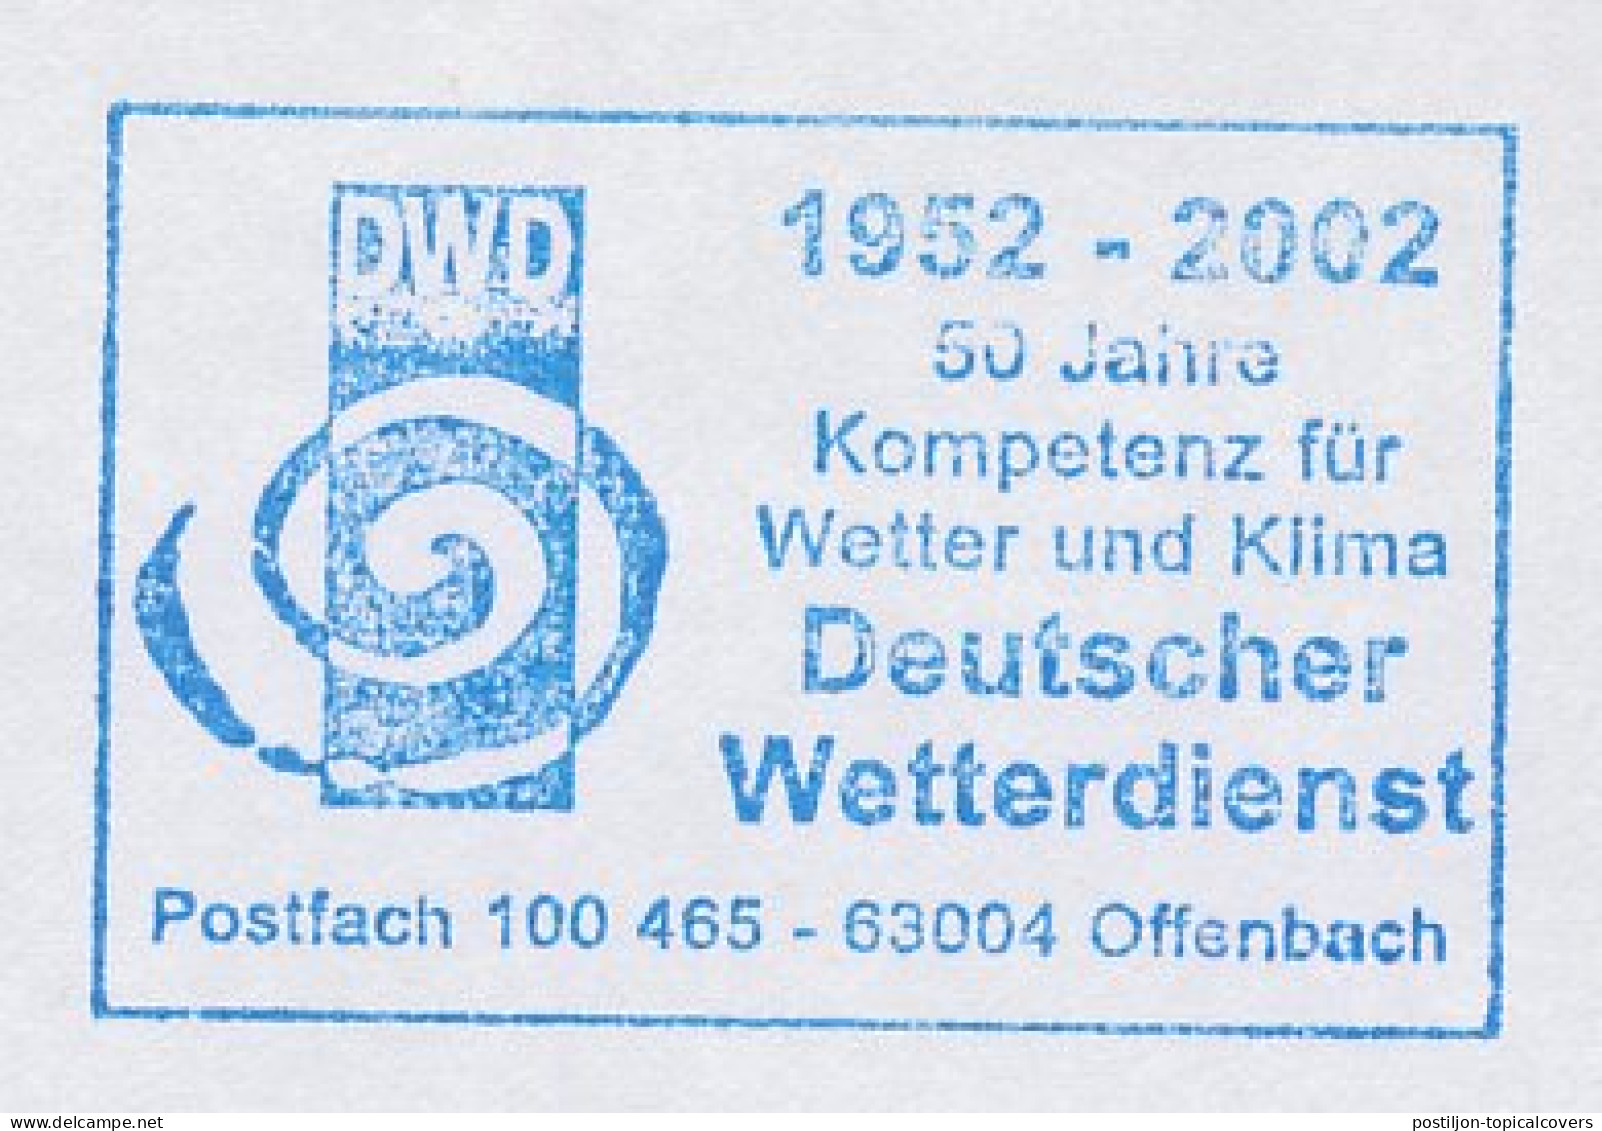 Meter Cut Germany 2002 Meteorological Service - Klimaat & Meteorologie